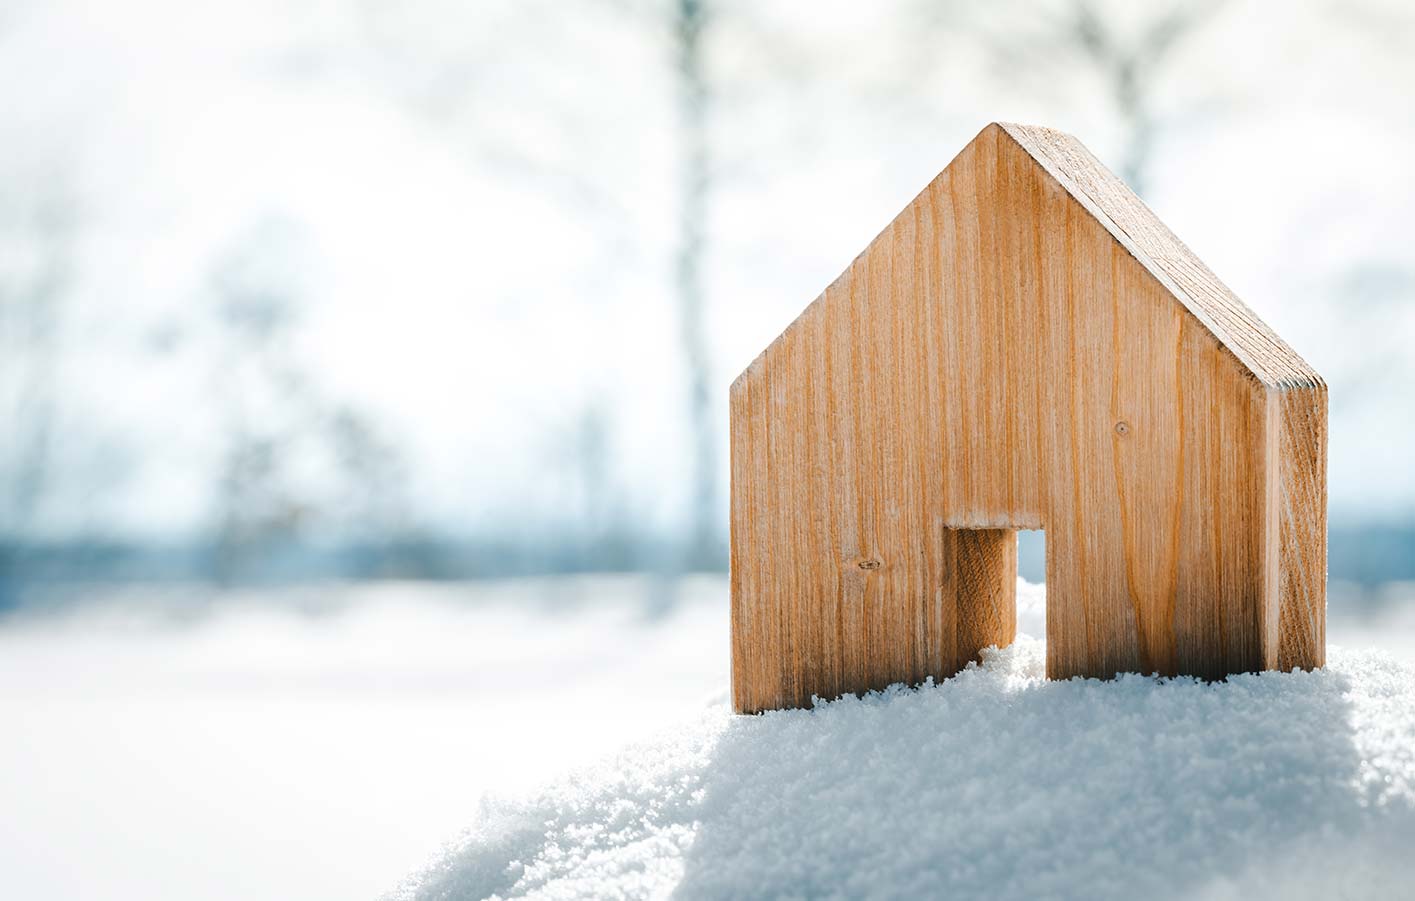 Modell eines Holzhauses im Schnee